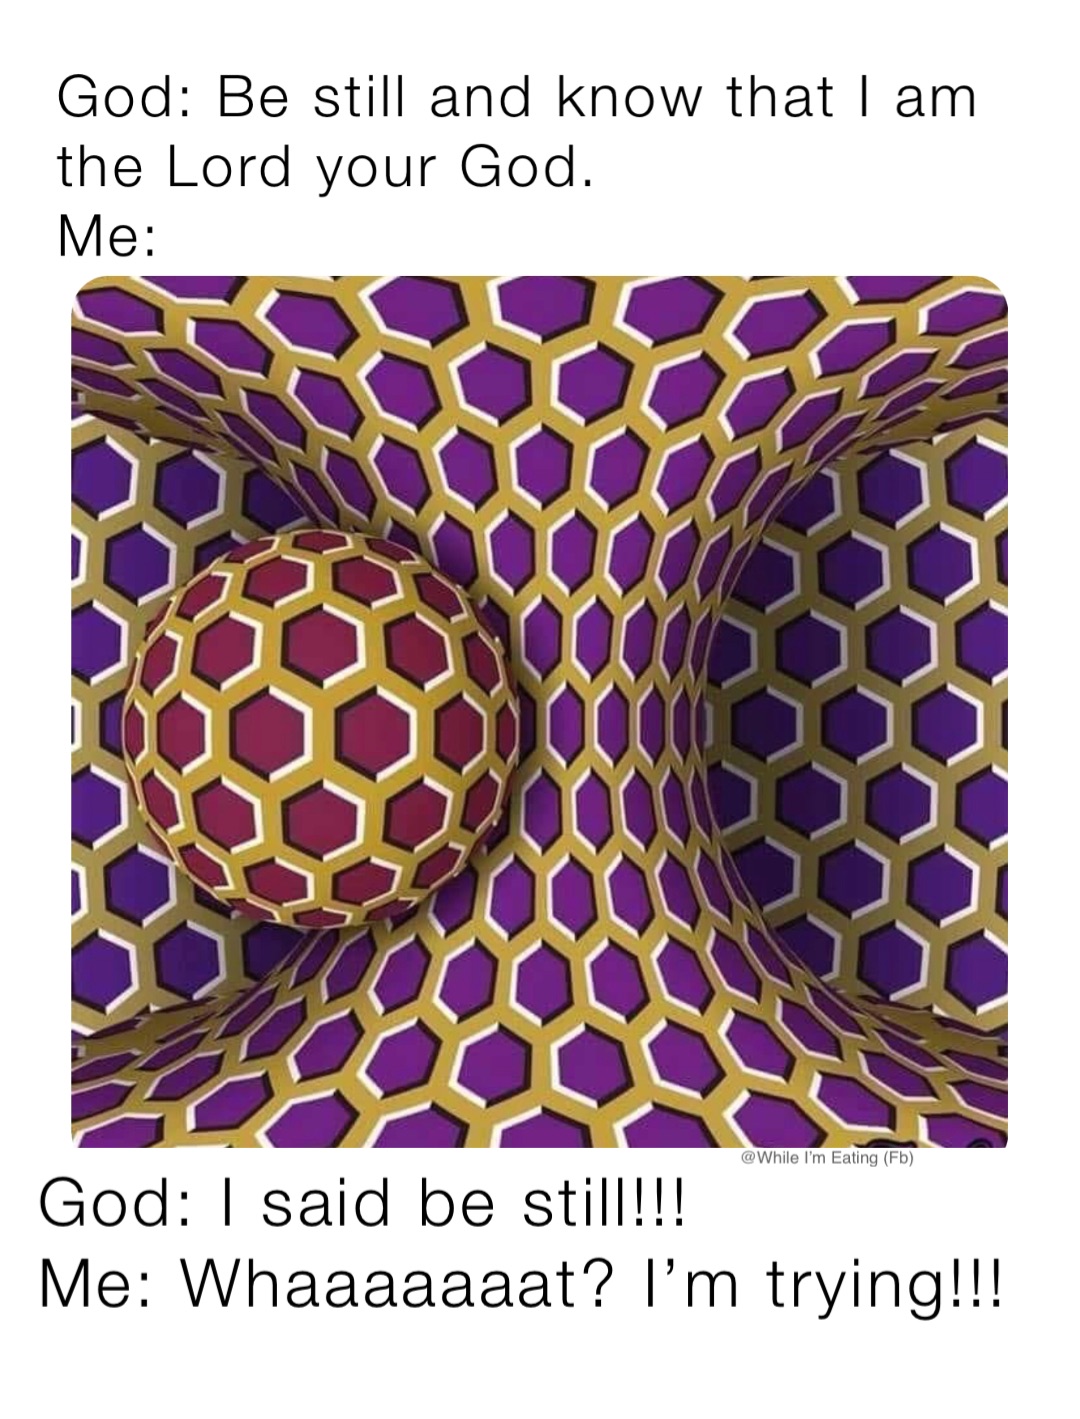 God: I said be still!!!
Me: Whaaaaaaat? I’m trying!!!